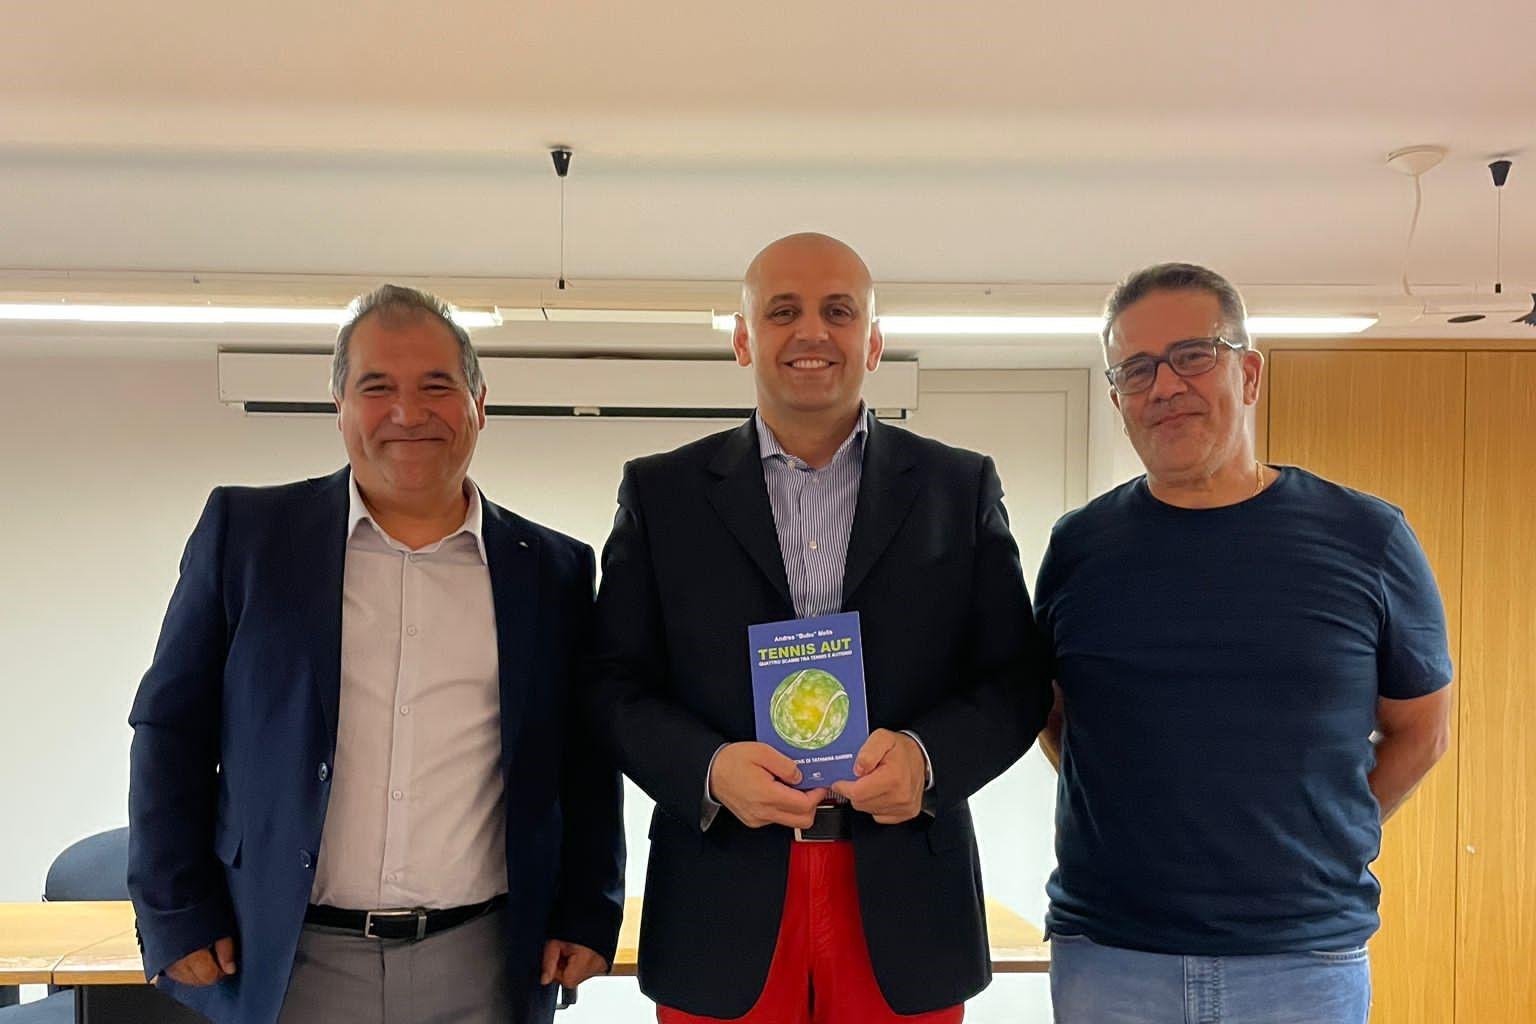 Il sindaco Fedele La delfa con l'autore del libro e il presidente del tennis club (Foto Serreli)